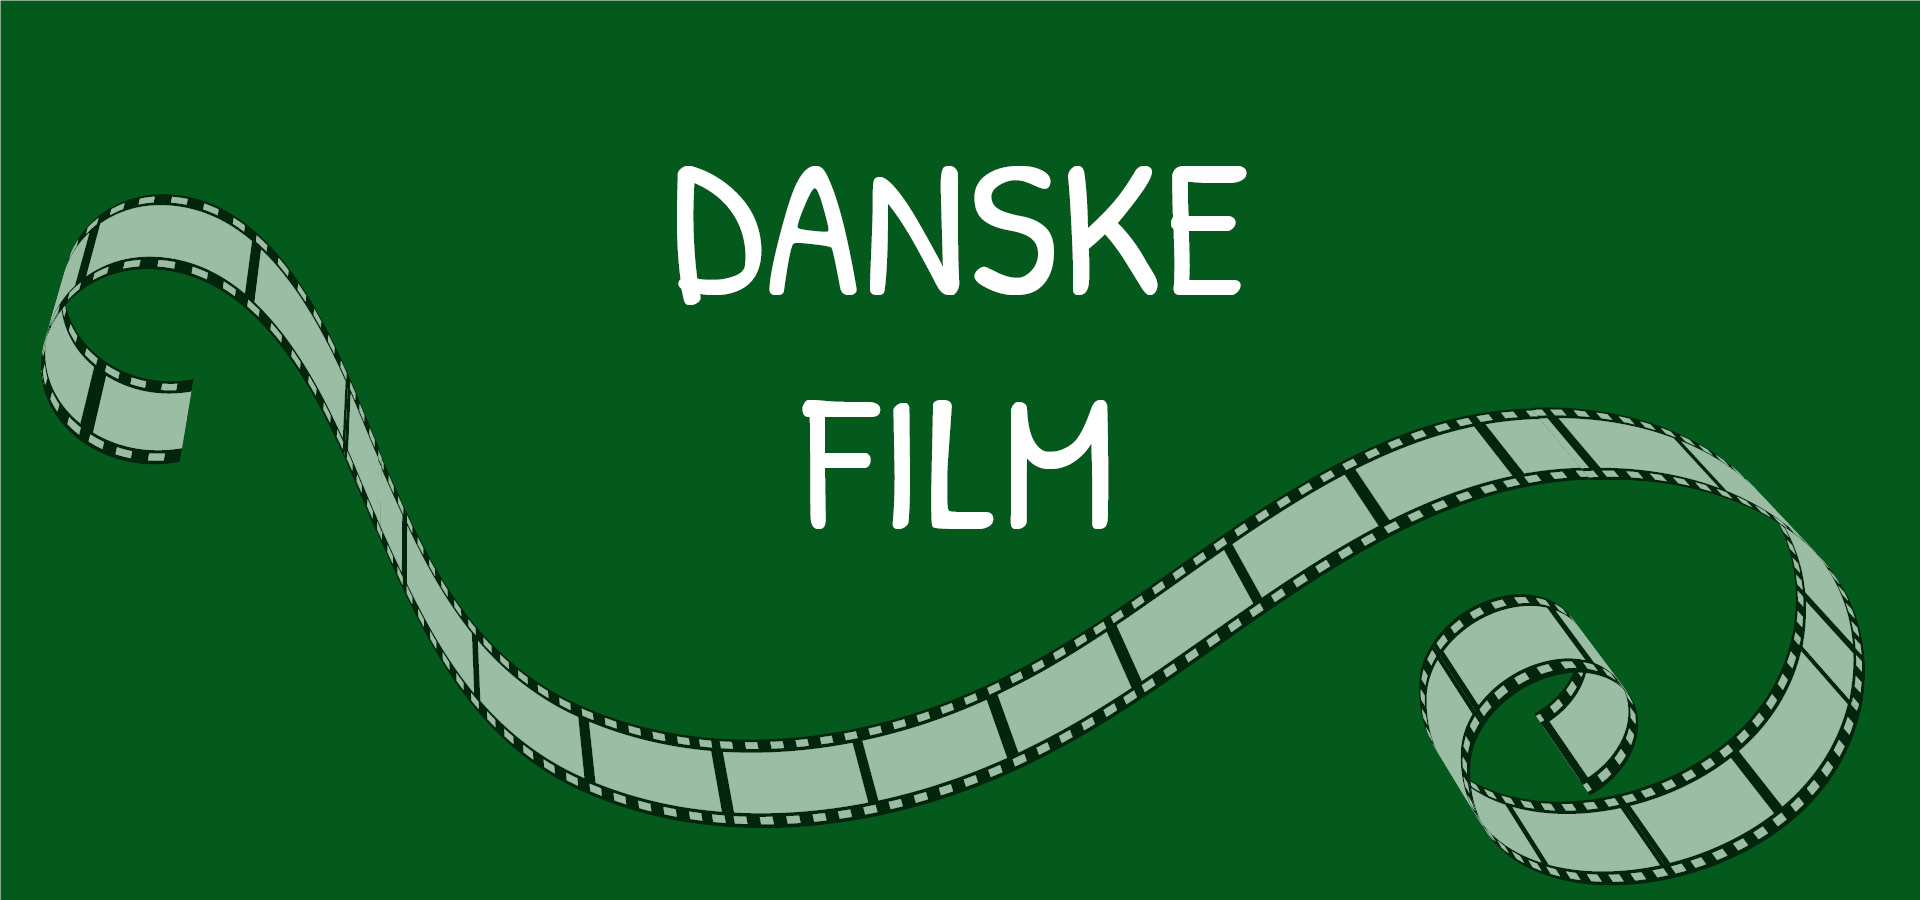 Danske Film er temaet for Rosenfestivalen 2023